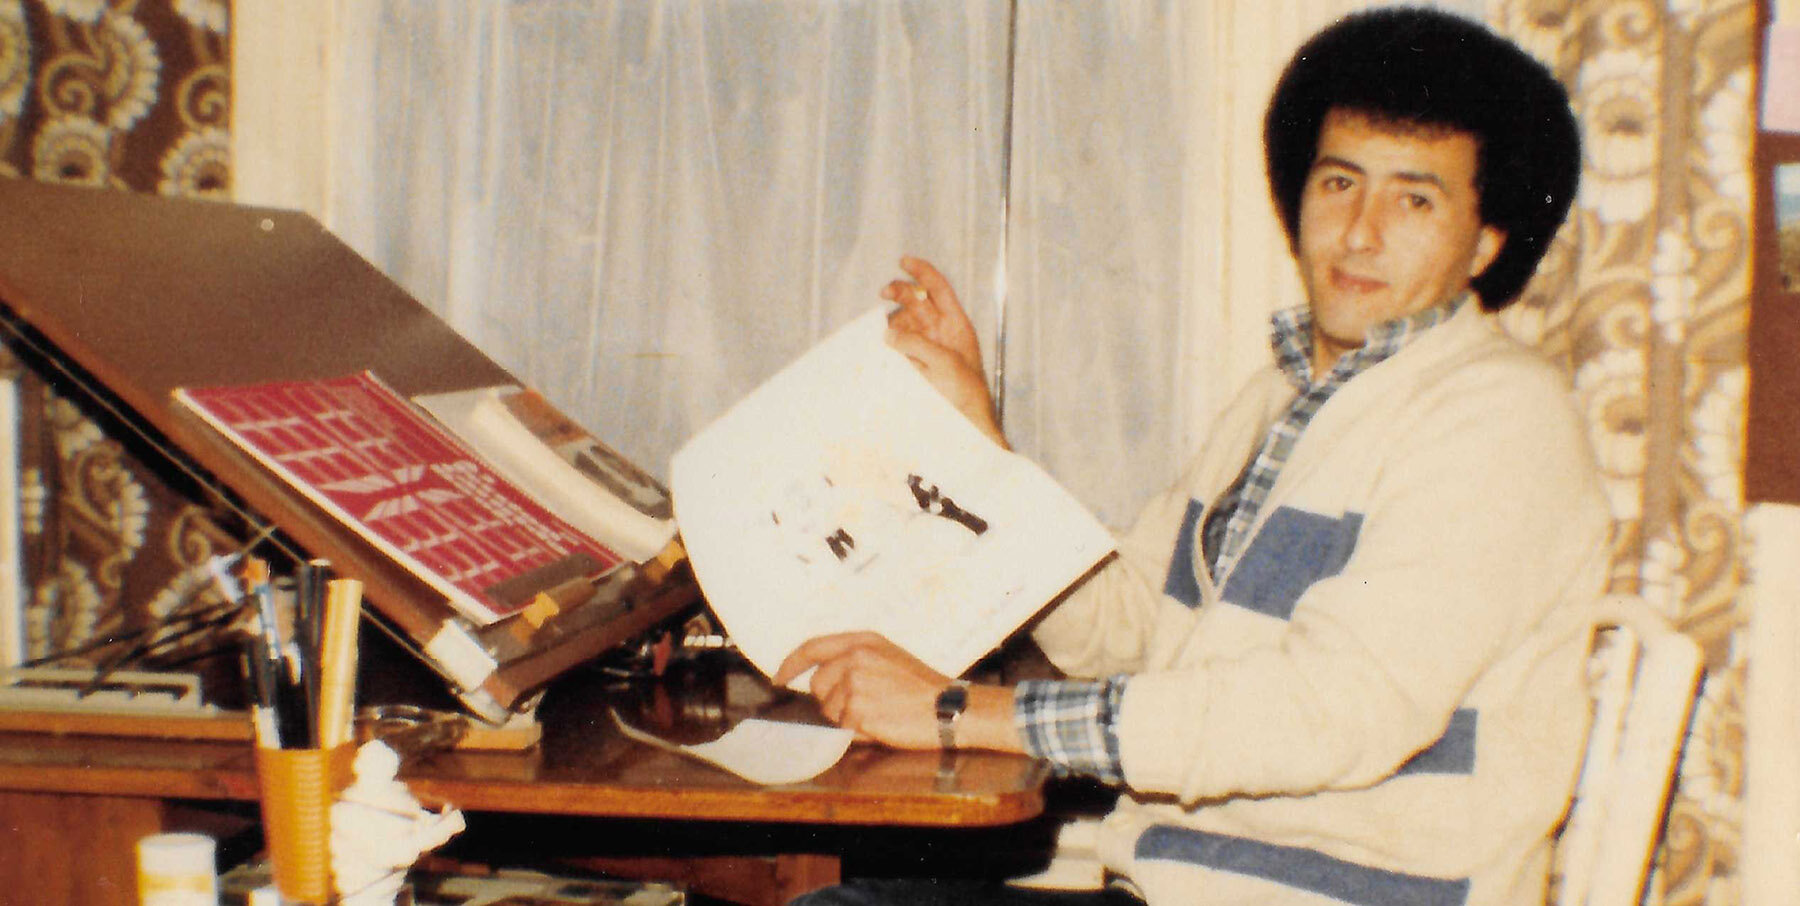 Hasan "Alsatoor" Dhaimish en su mesa de dibujo en Burnley, hacia 1980 (cortesía de Sherif Dhaimish).